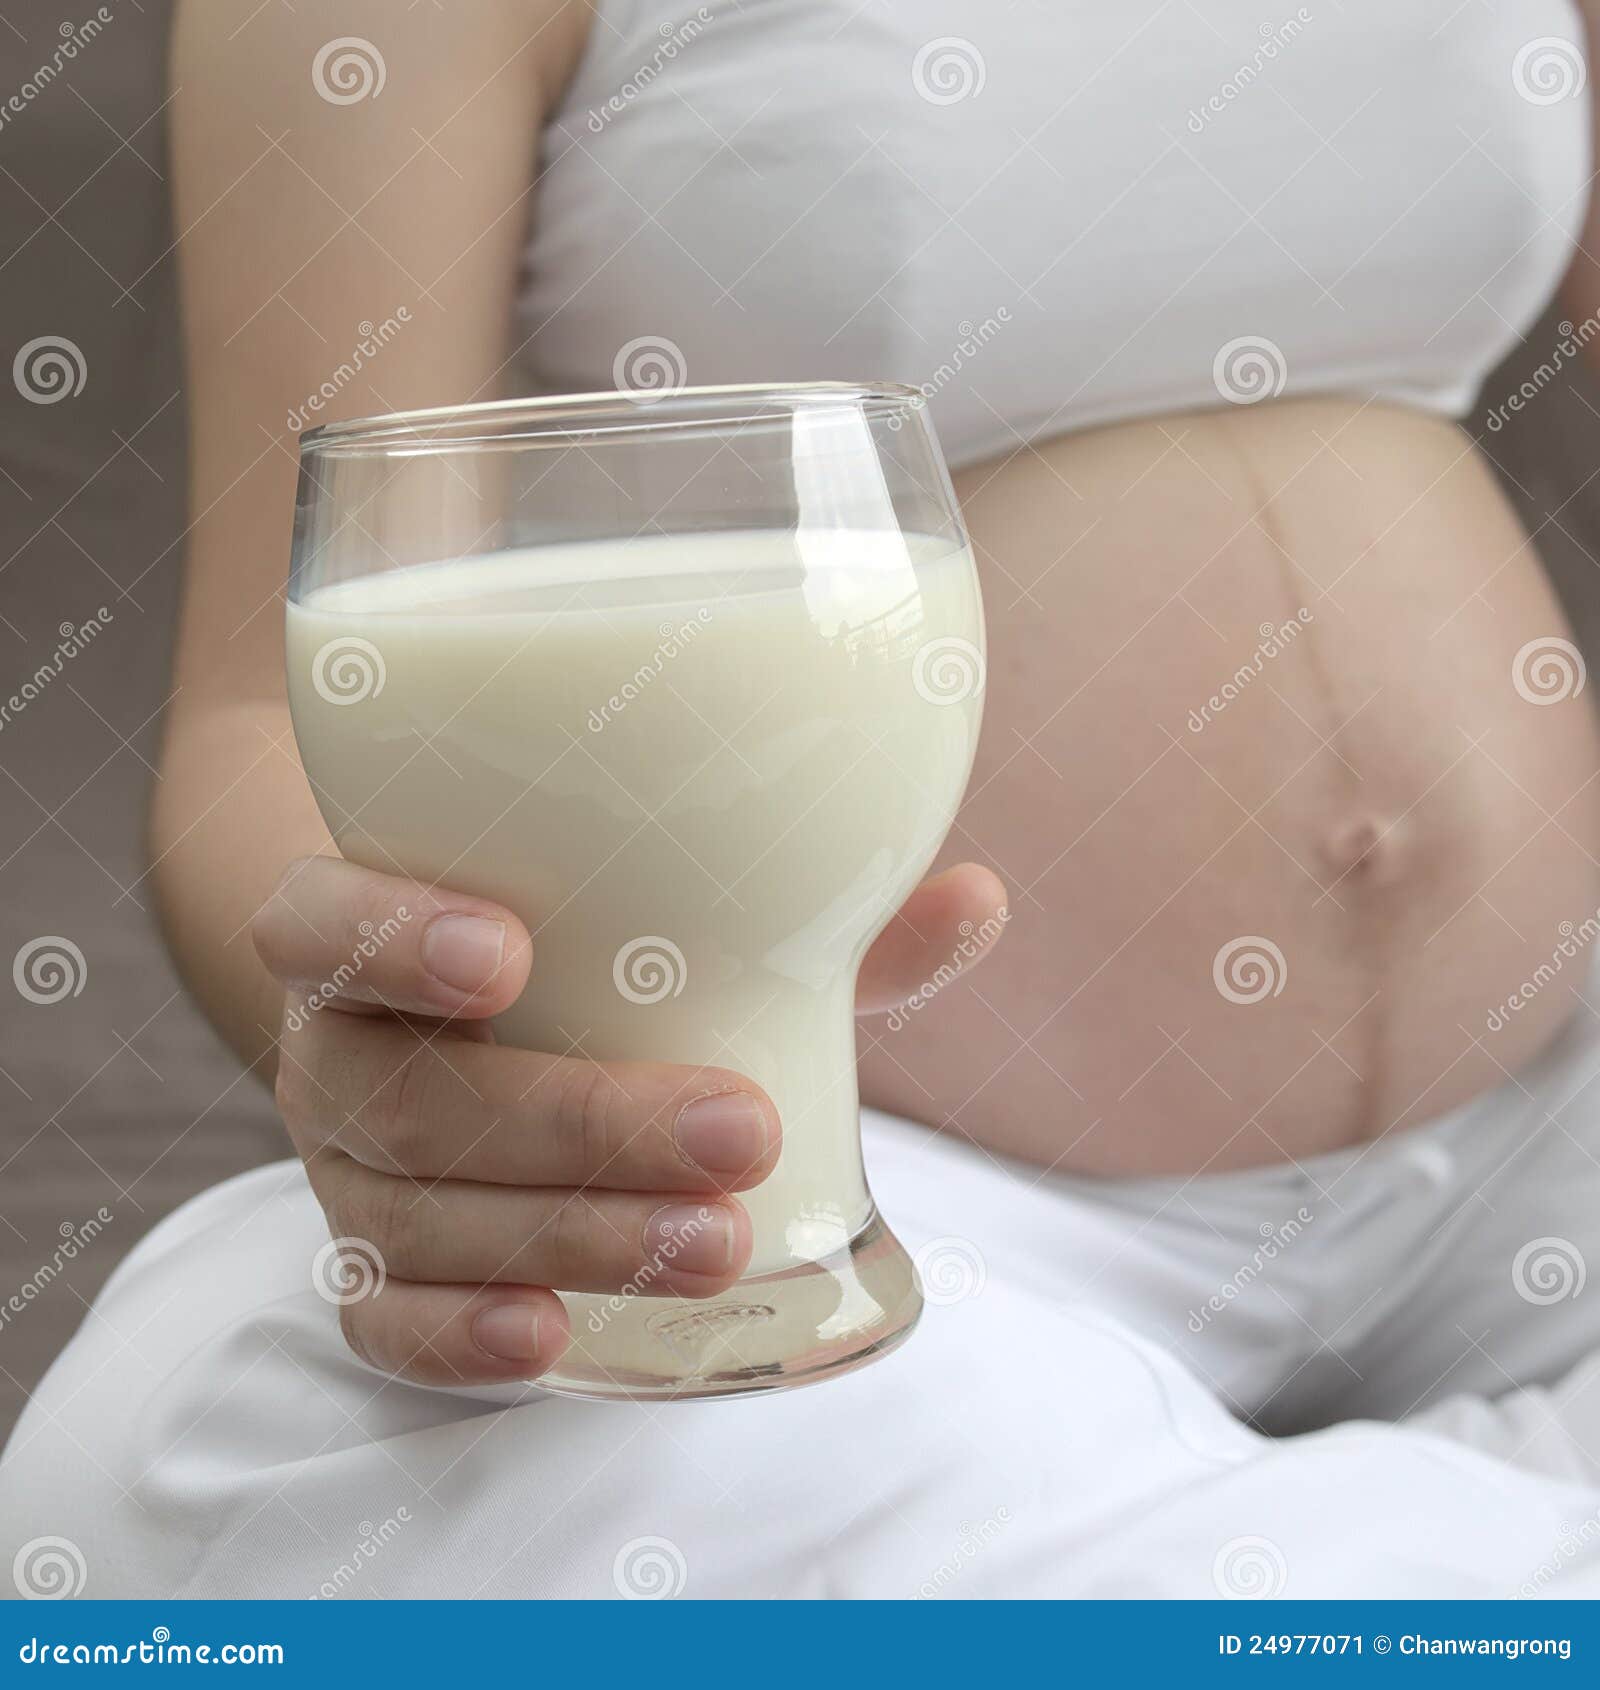 выделения из груди в ранние сроки беременности фото 114